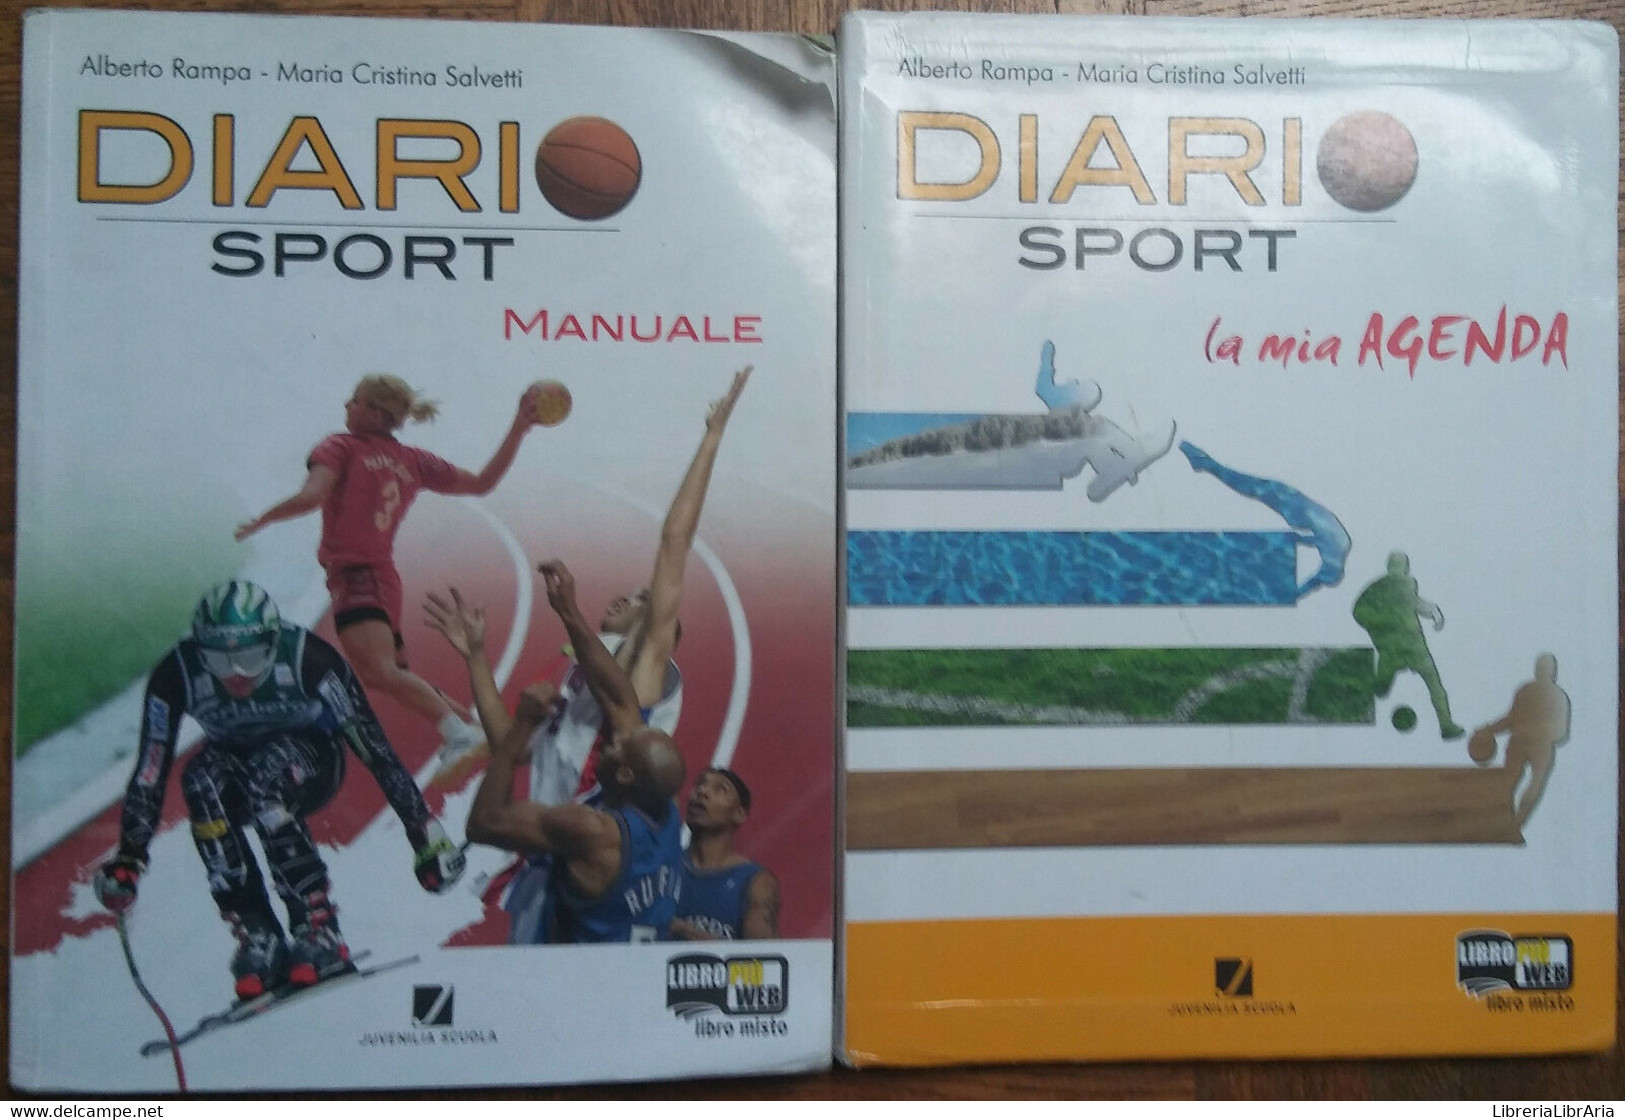 Diario Di Sport Manuale Agenda-Alberto Rampa;MCristina Salvetti-Juvenilia,2010-R - Adolescents